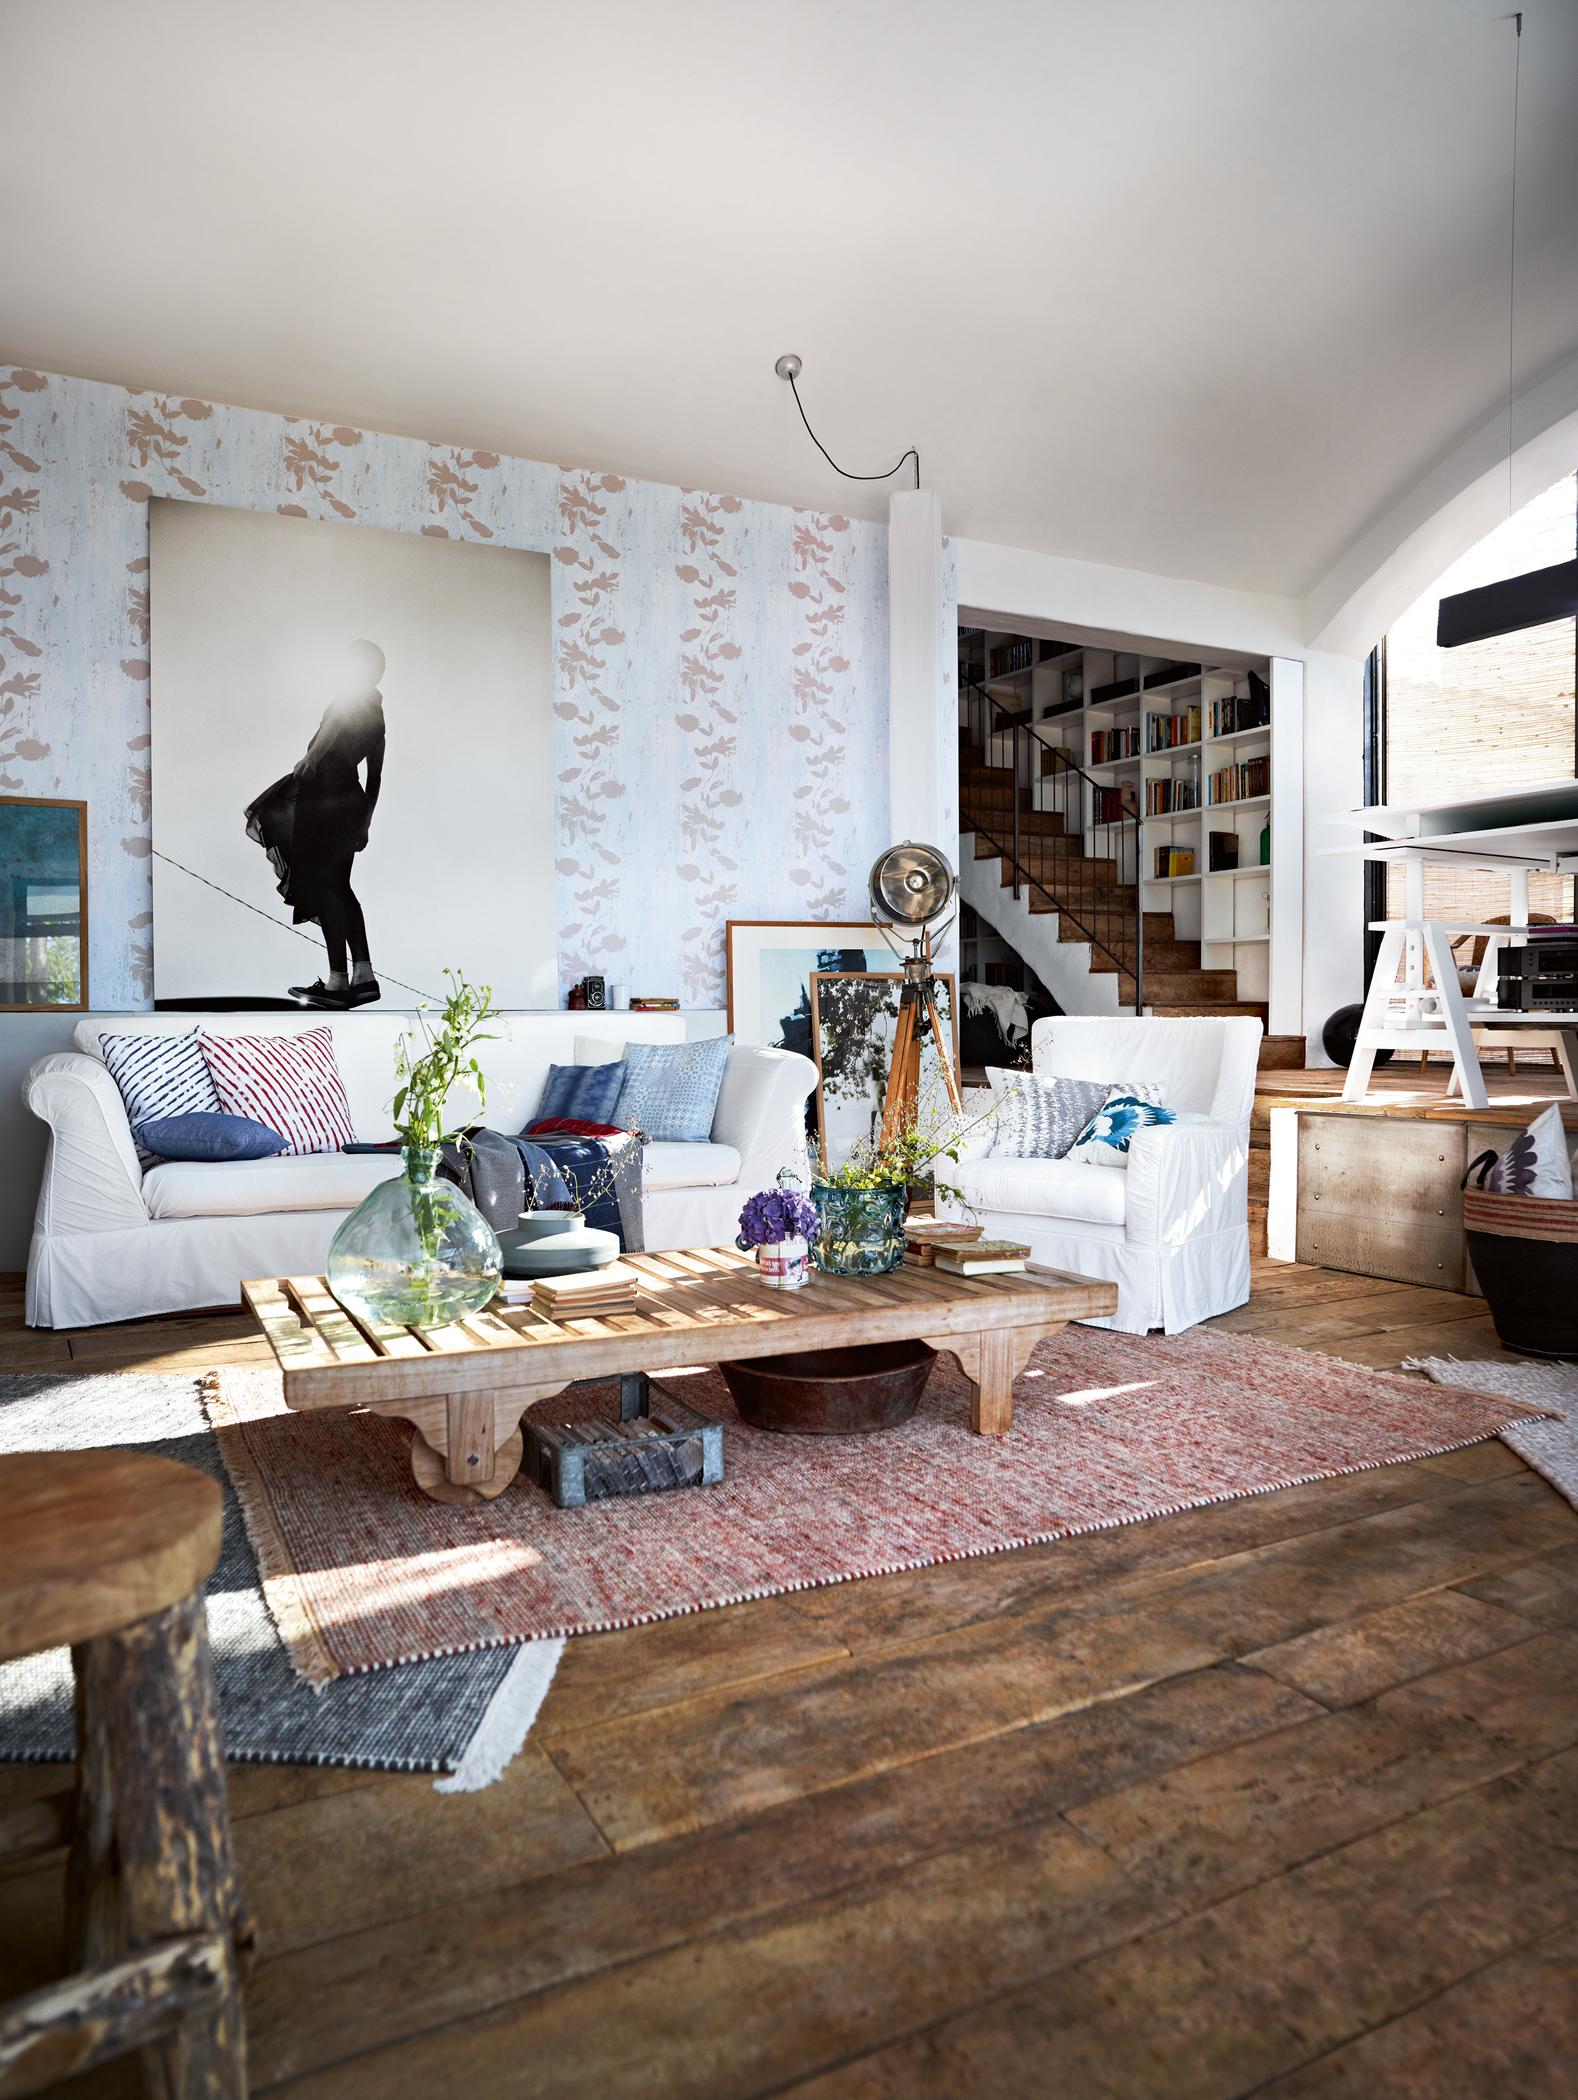 Wohnzimmer im Vintage-Look #holztisch #eklektisch #teppich #vintage #kissen #mustertapete #rustikal ©Esprit Home